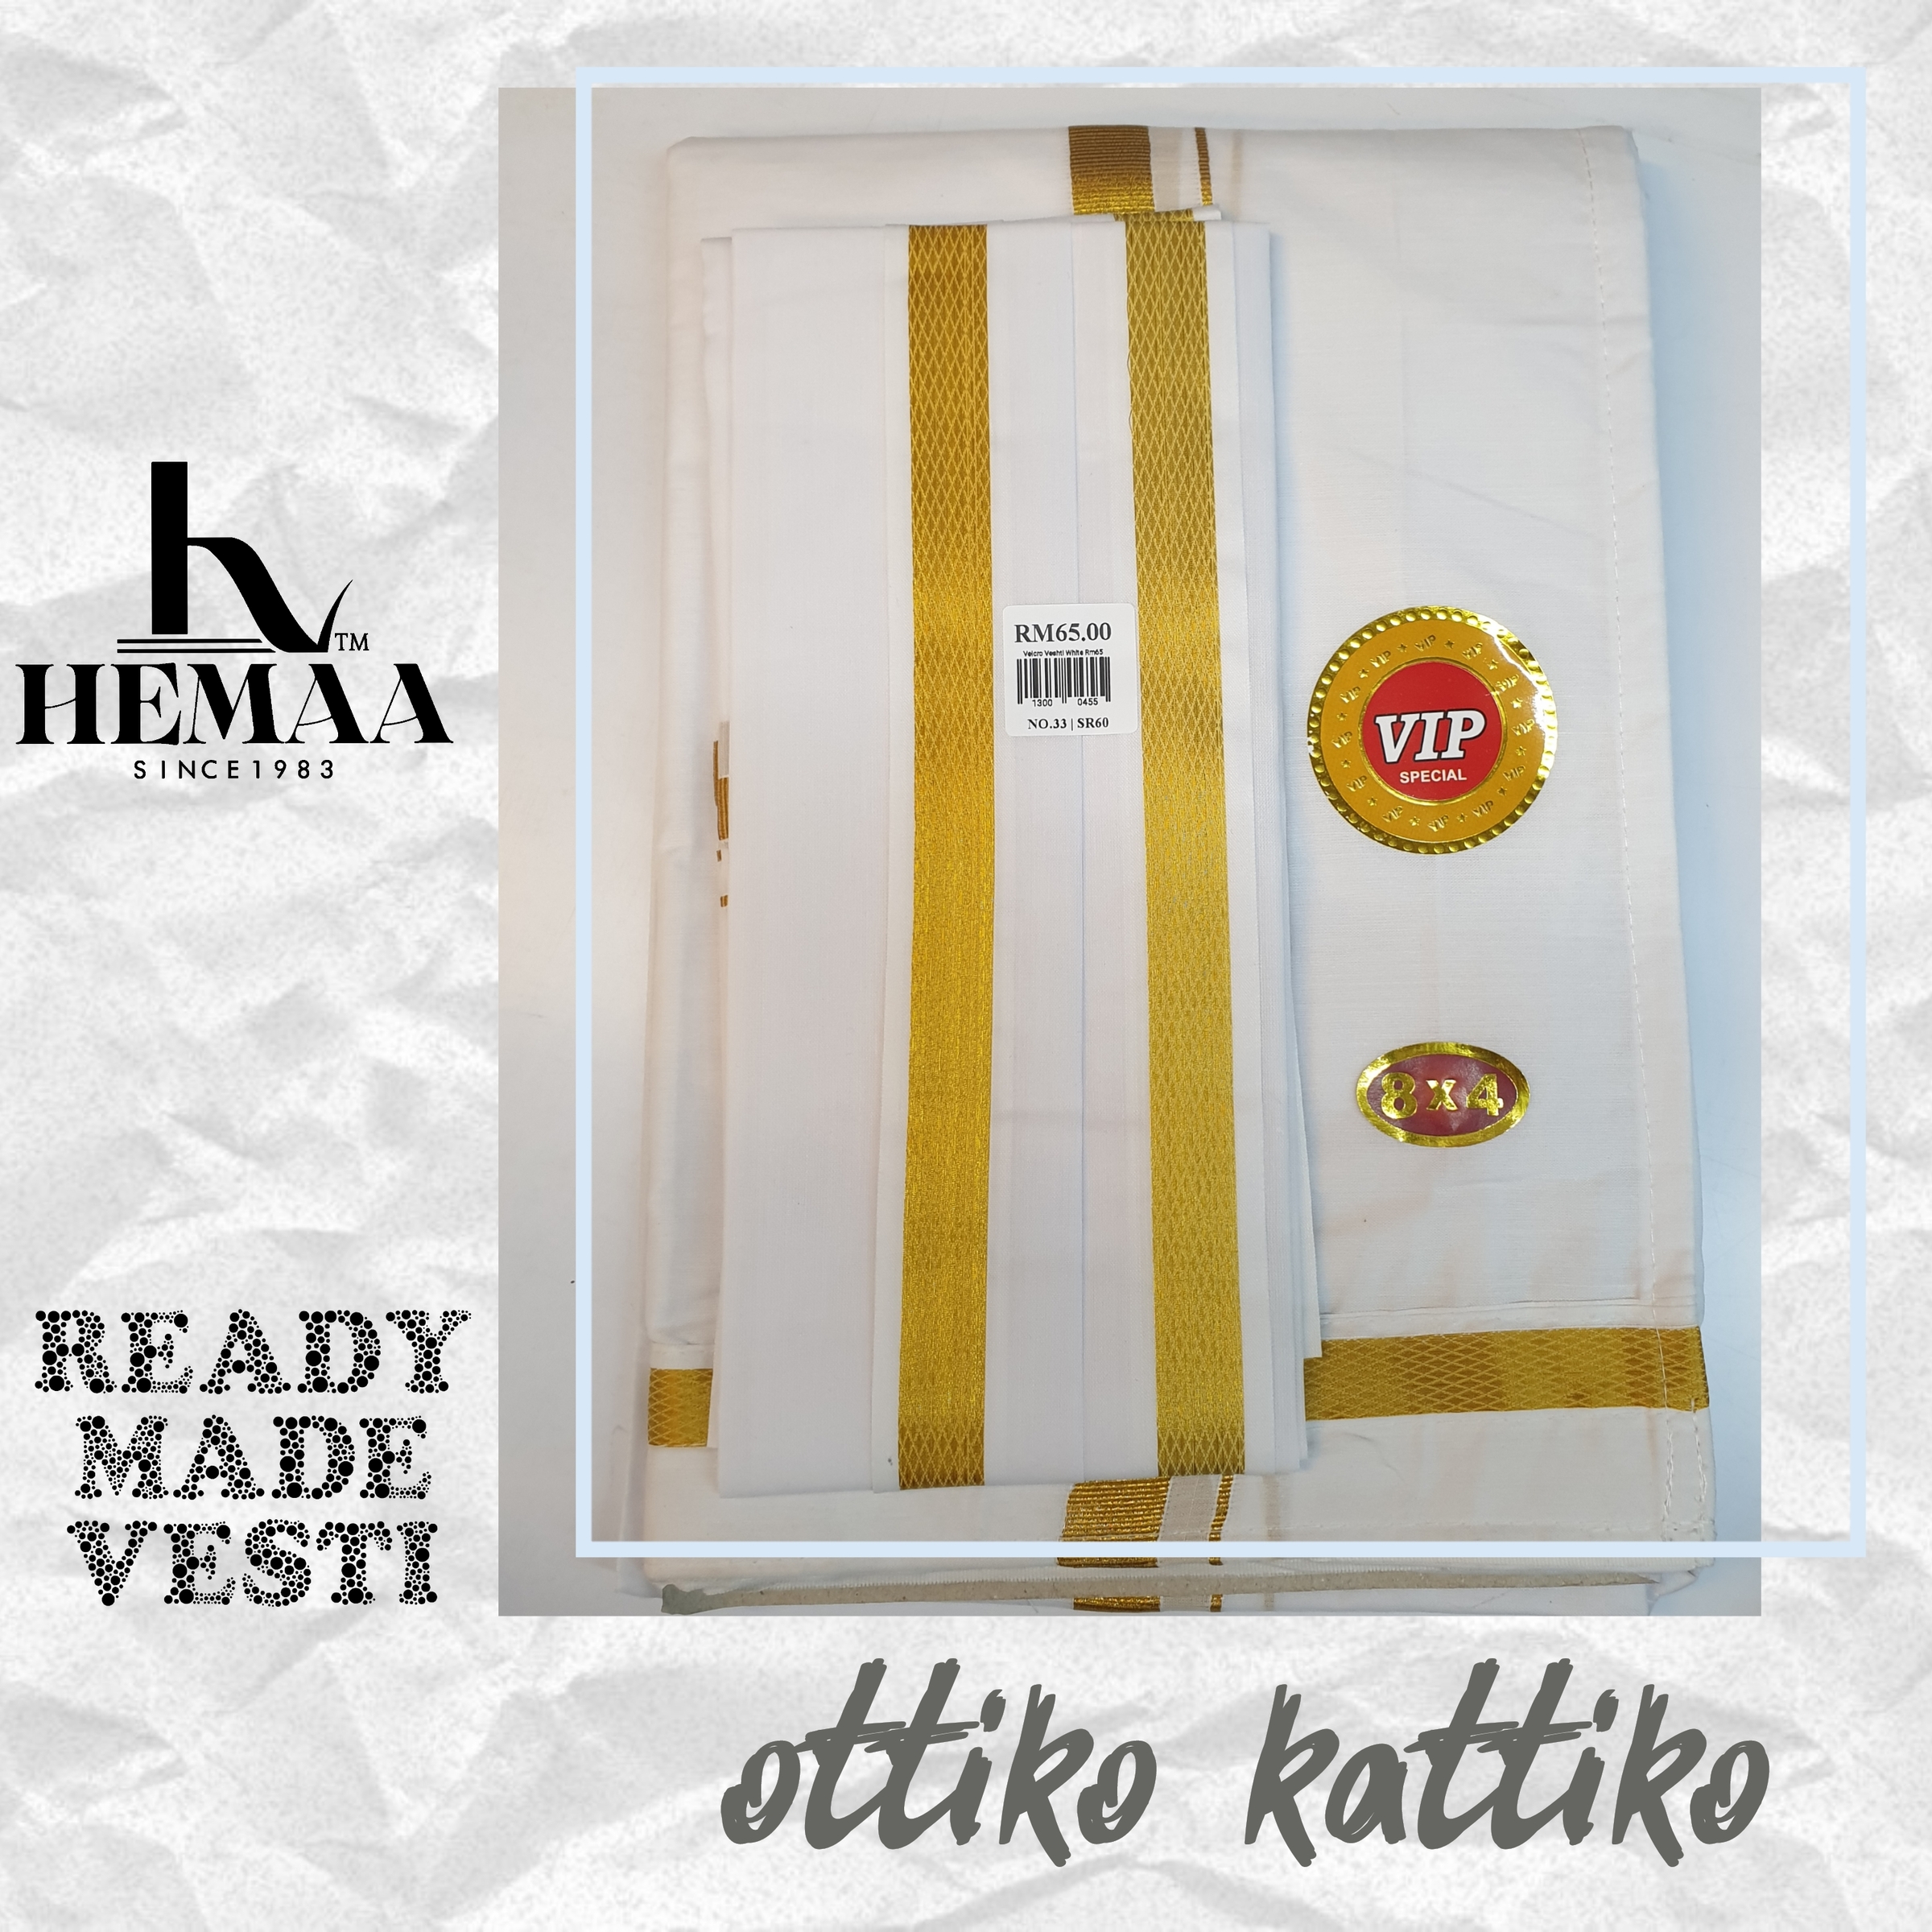 Readymade Veshti Velcro Veshti / Ottiko Kattiko / Standard Size / Easy Wear  Stick on Vesti Hemaa – HEMAA Since 1983